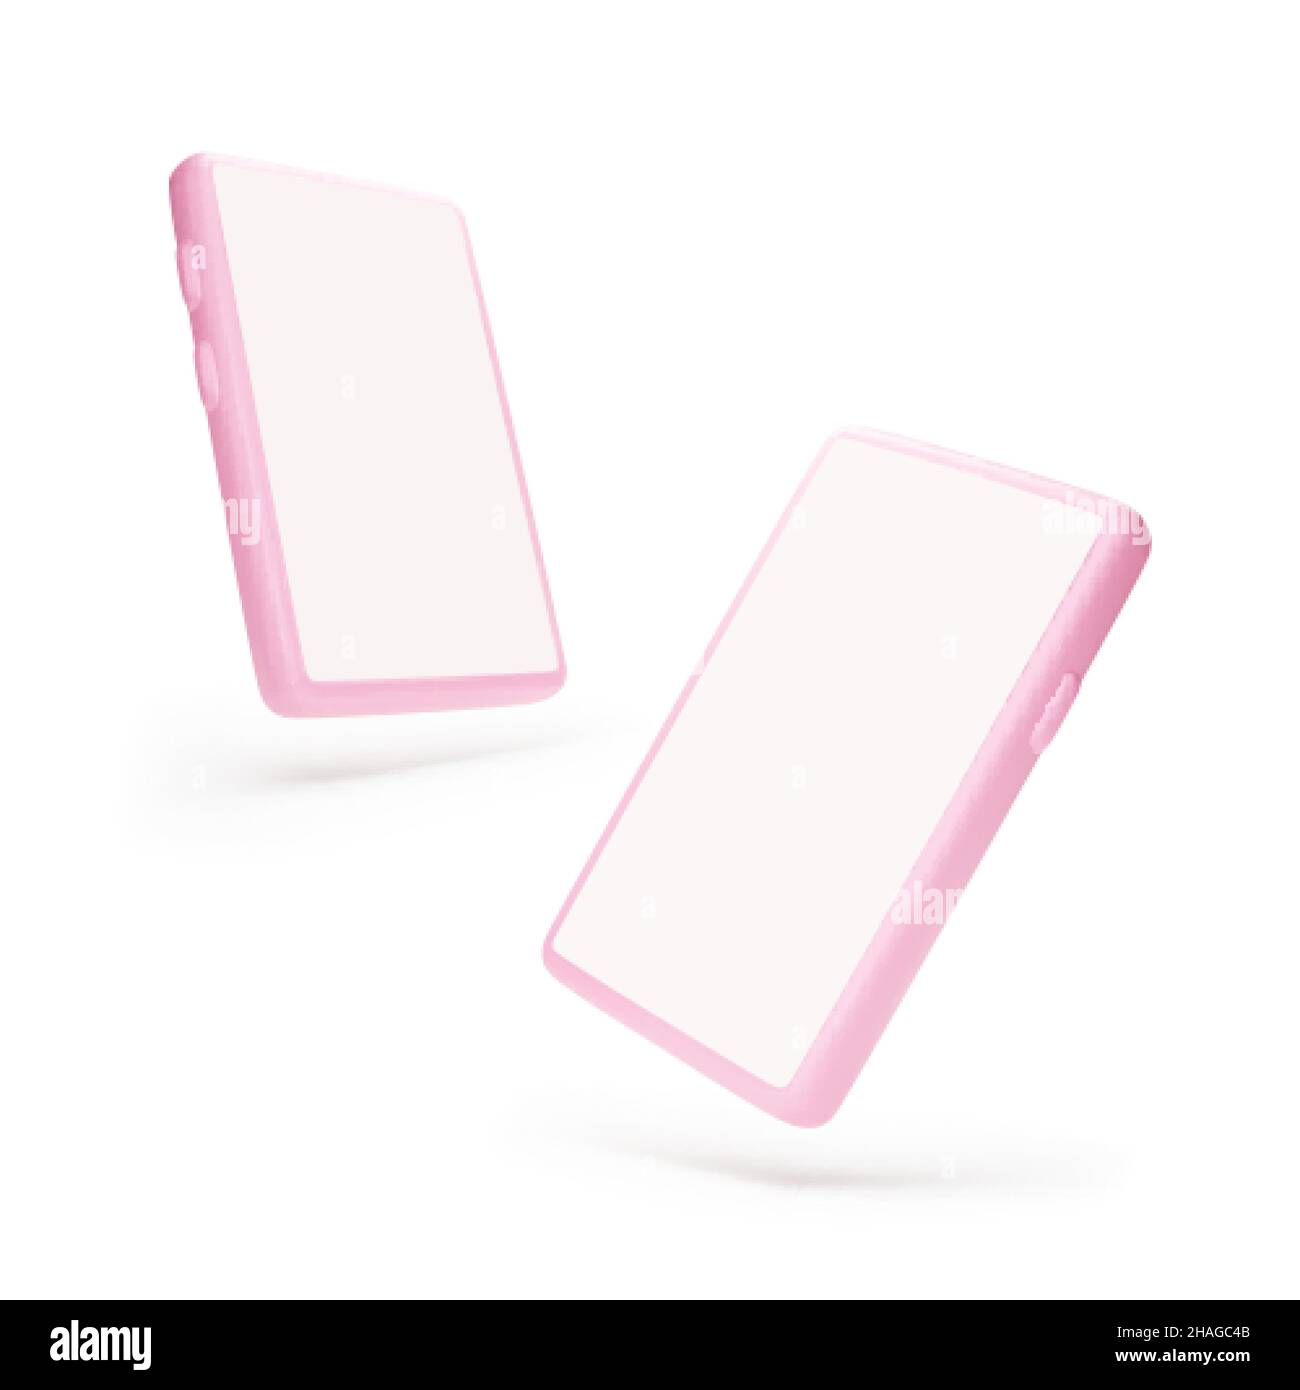 Smartphone-Modell. Anderer Blickwinkel zum Mobiltelefon. 3D rosa Schablone Handy mit transparentem Schatten. Vektorgrafik isoliert auf Weiß Stock Vektor